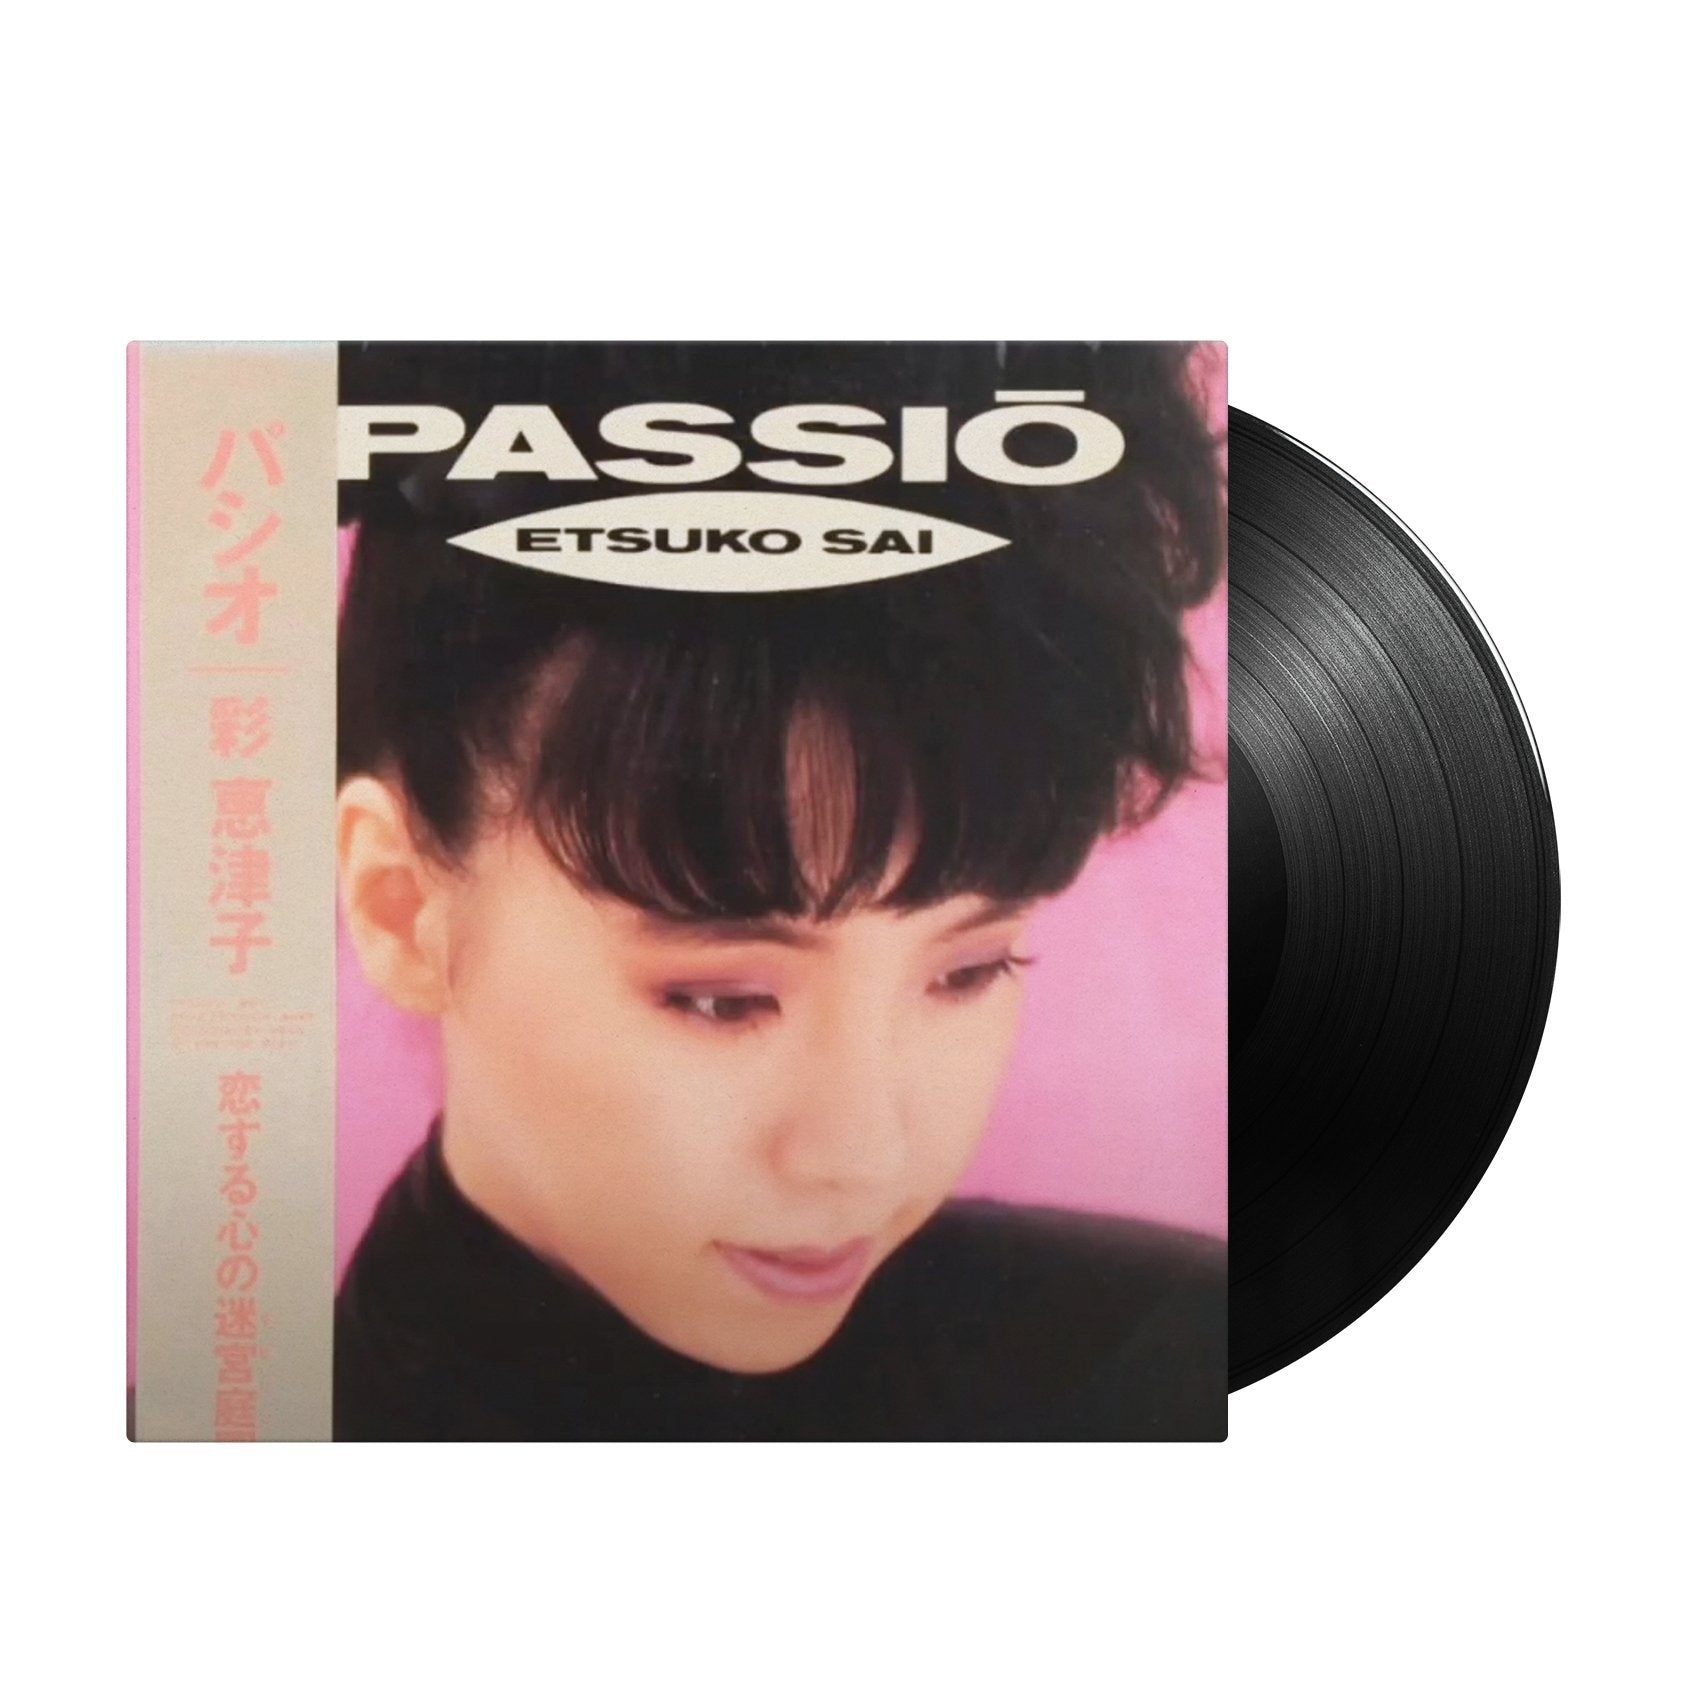 Etsuko Sai - Passio (Japan Import) - Inner Ocean Records